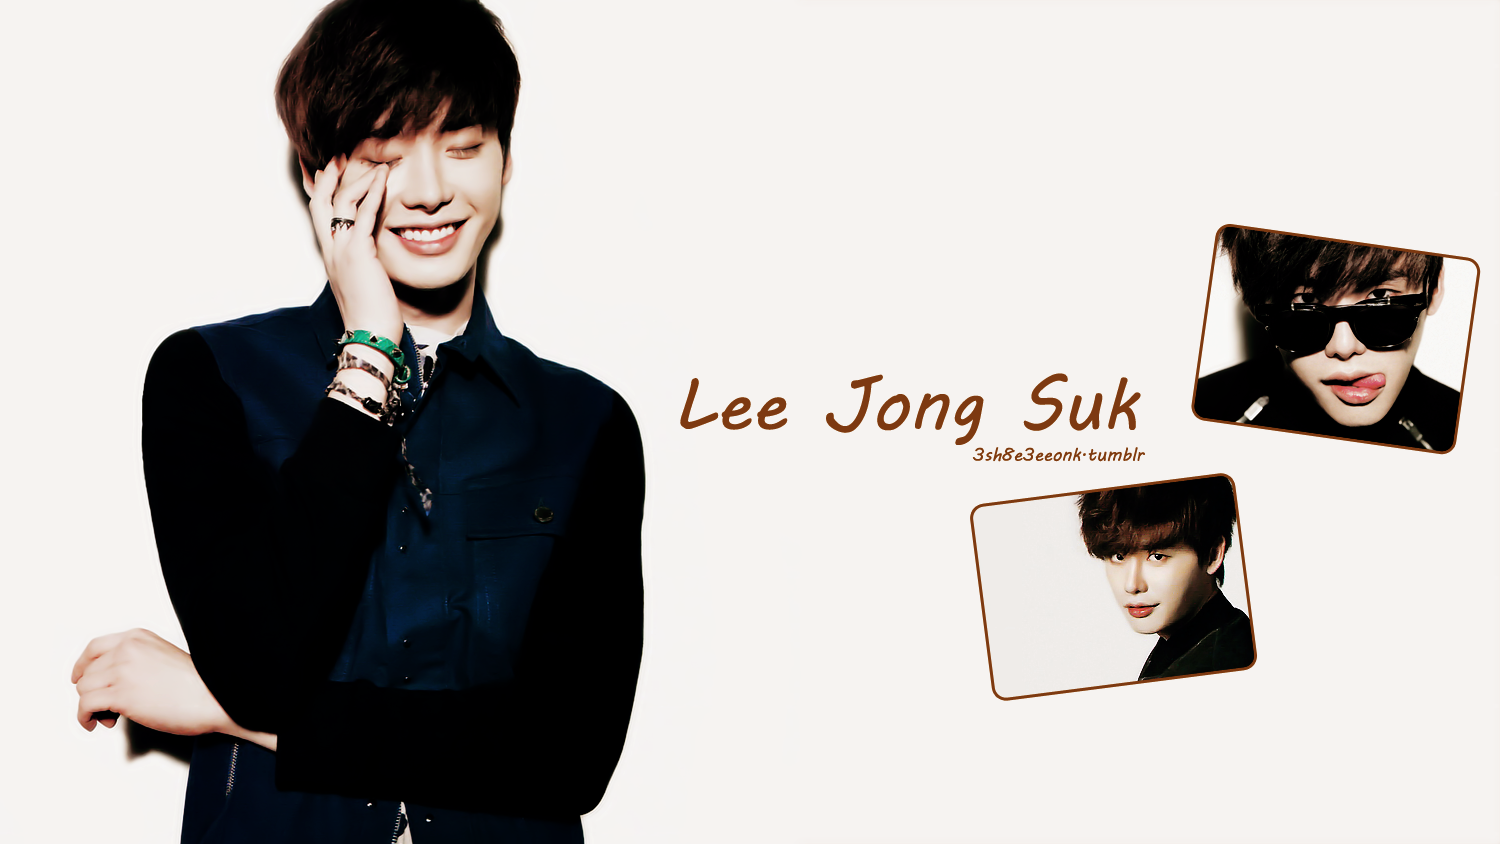 ♥ Lee Jong Suk ♥ - Lee Jong Suk Smile W - 1500x844 Wallpaper - teahub.io